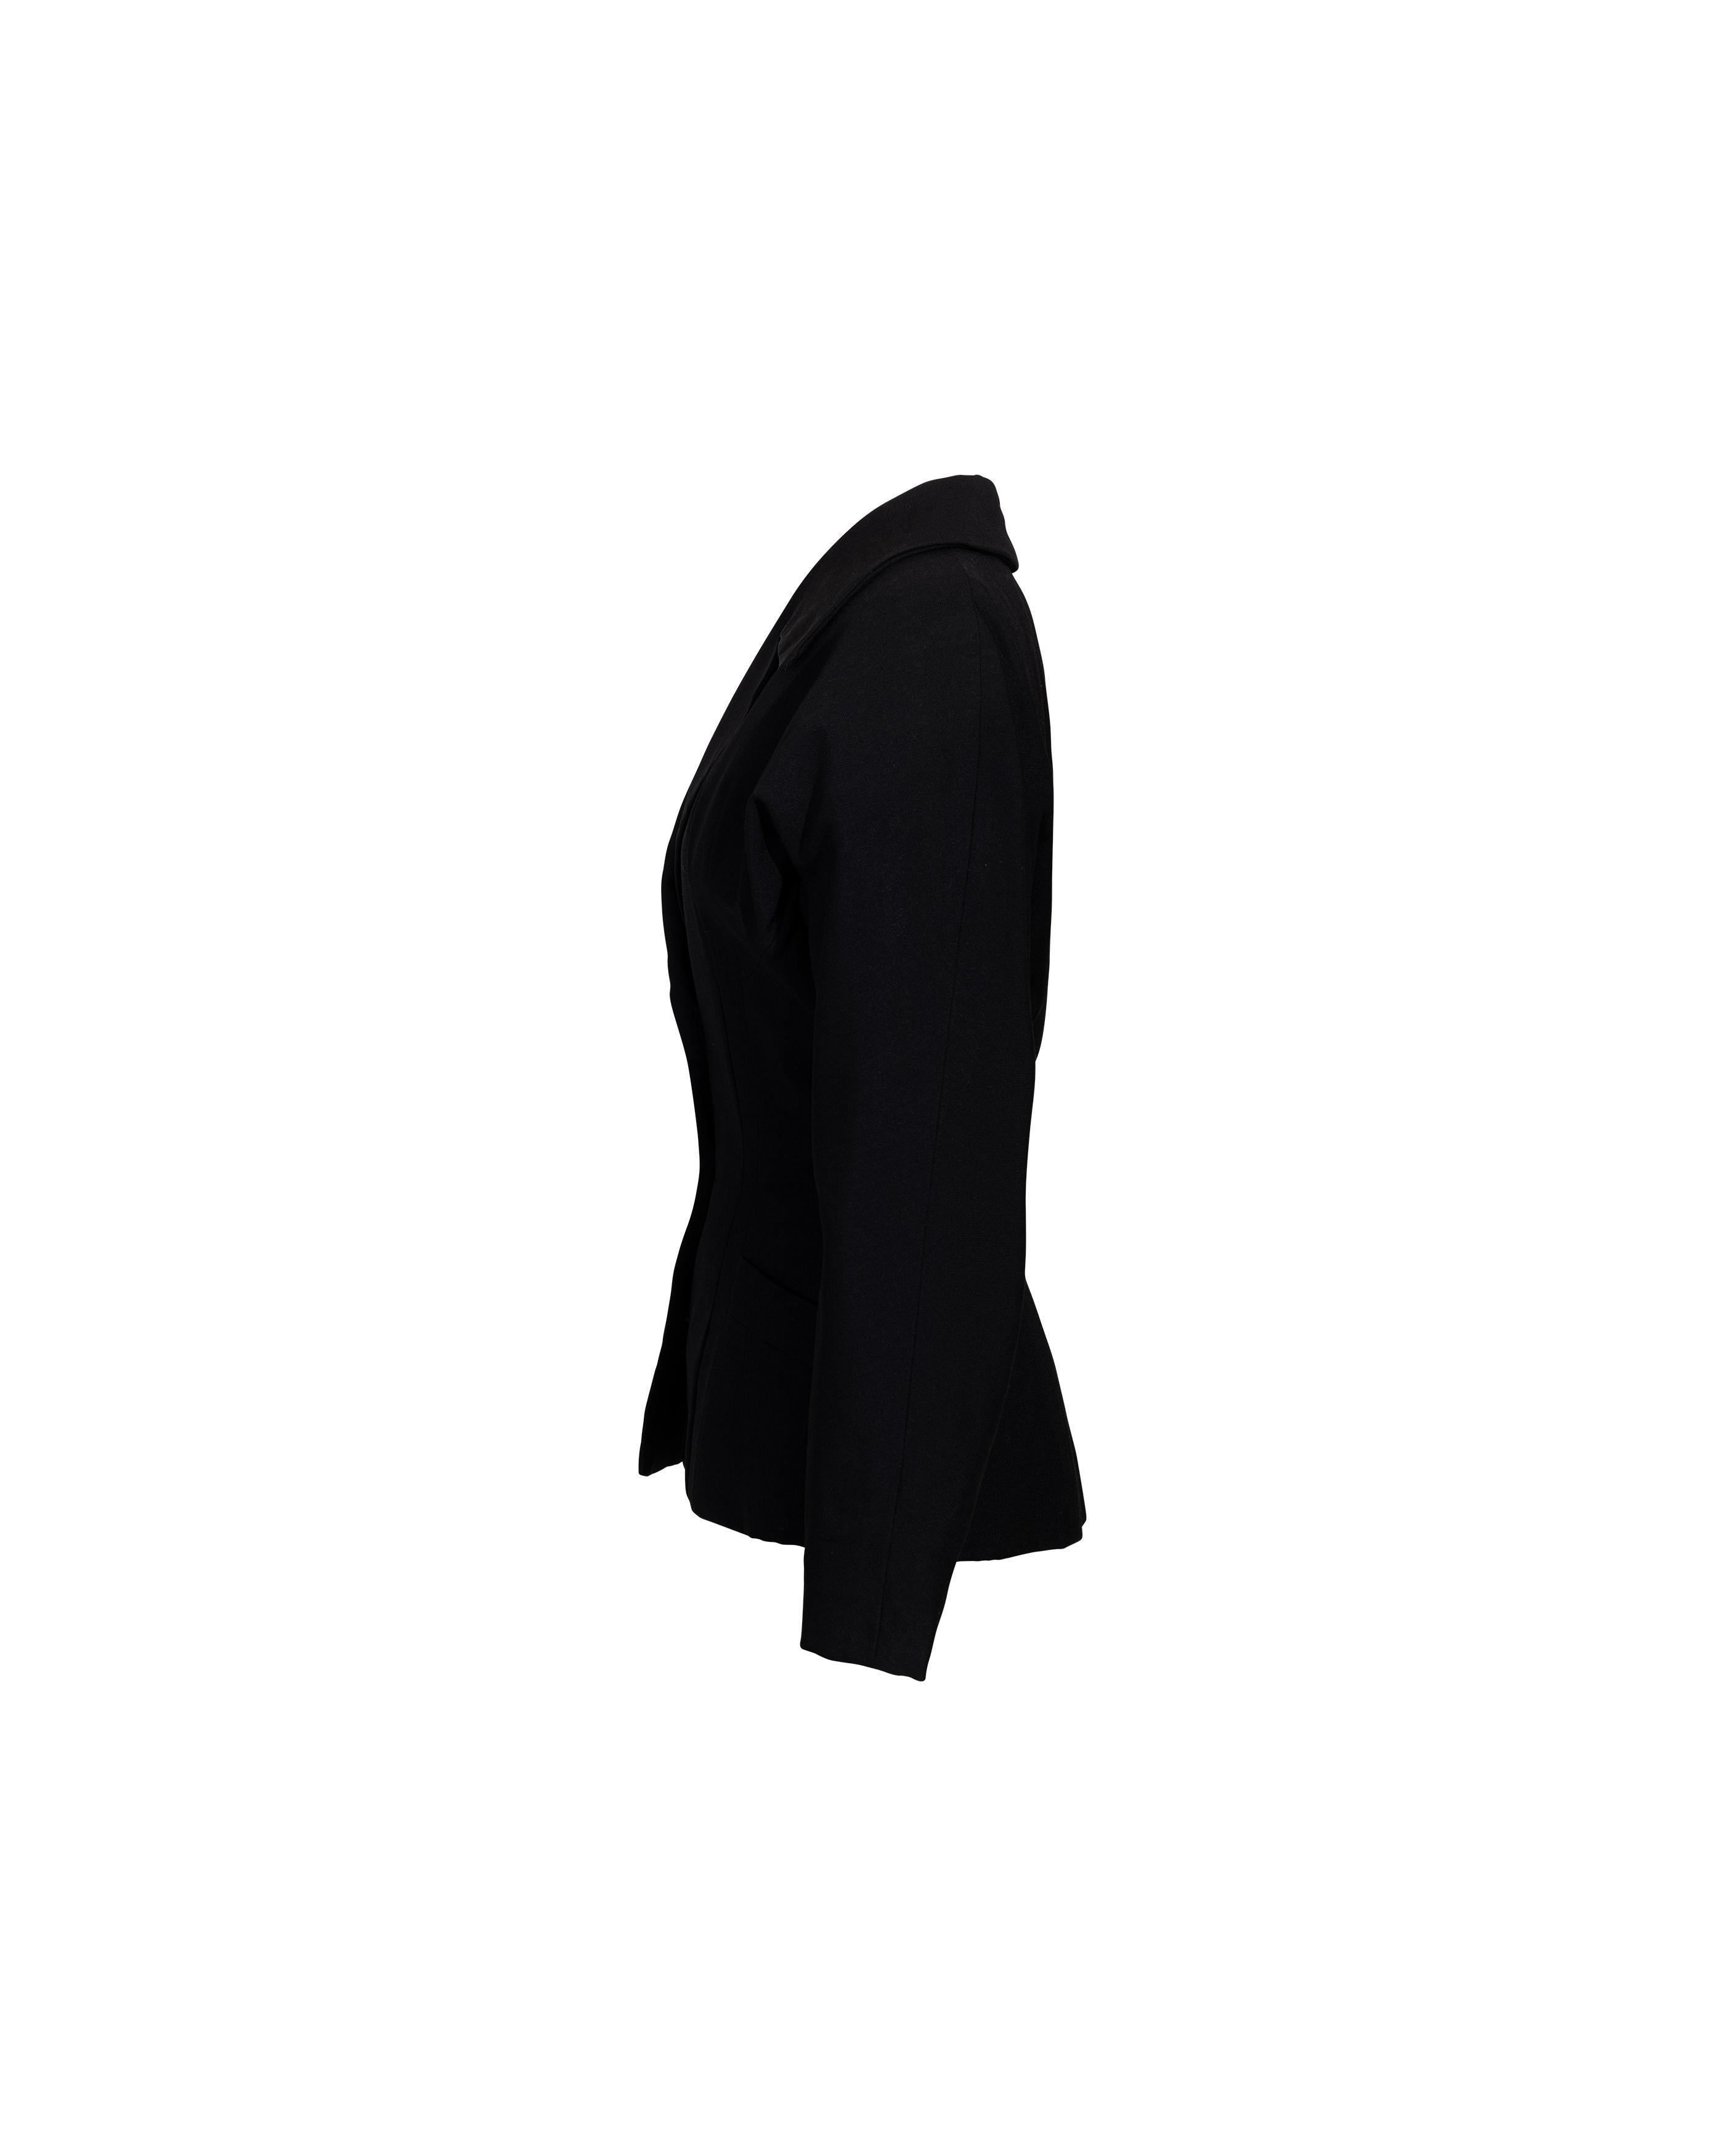 c. 1950 Christian Dior Couture 'New Look' schwarze Wolljacke. Langärmeliger Blazer mit gekerbtem Revers und taillierter Passform für die charakteristische 